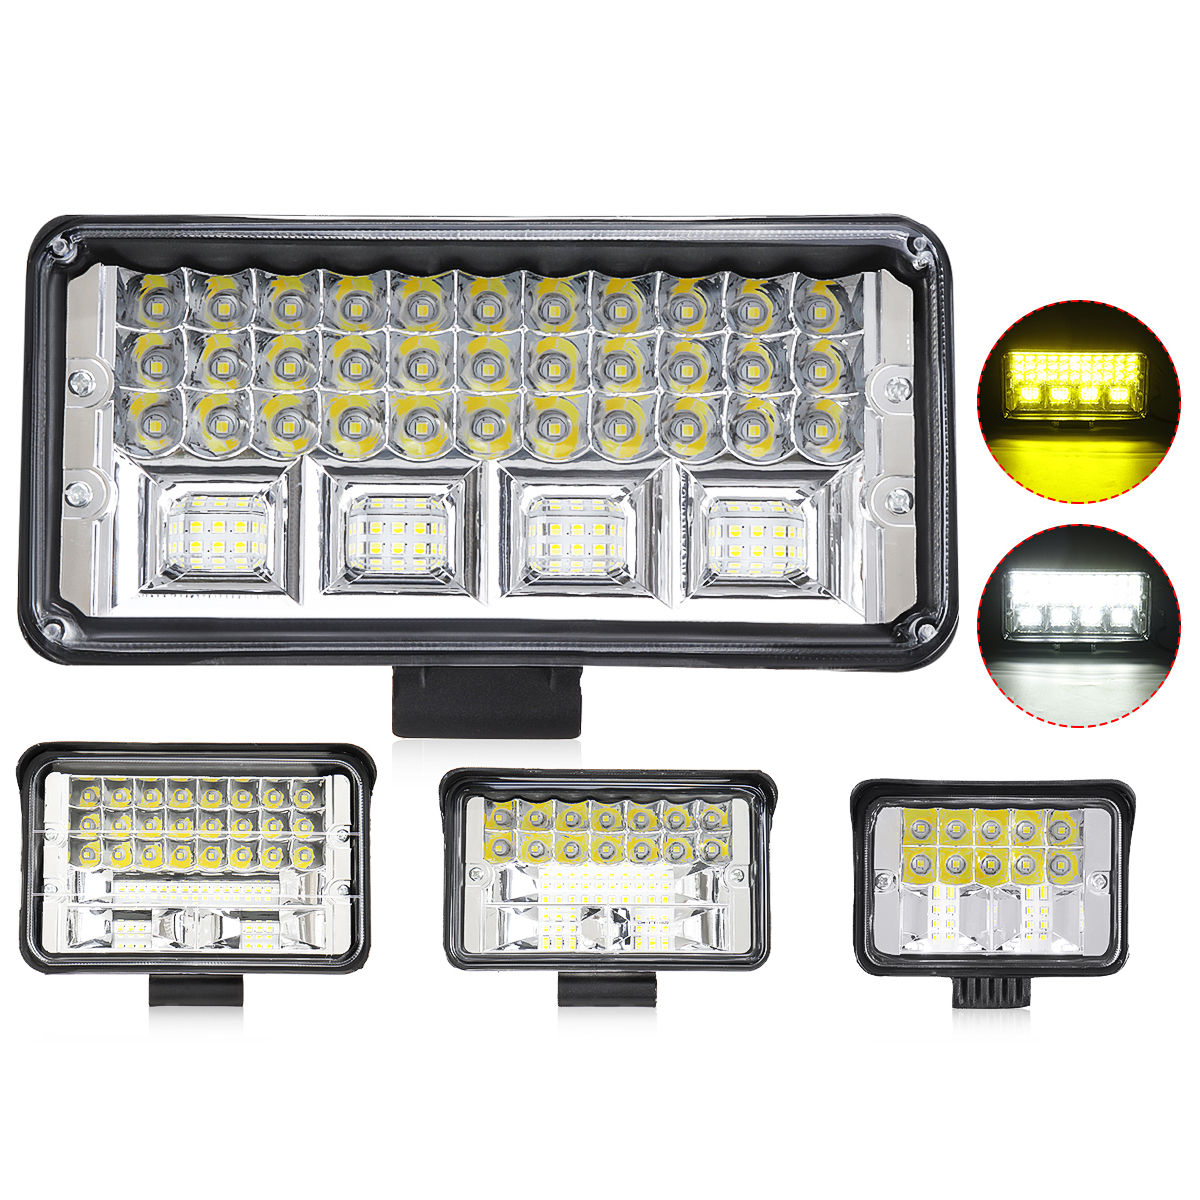 

12V 24V 3Inch / 4Inch / 5Inch / 7inch LED Рабочий свет Прожектор Лампа Желто-белый Водонепроницаемы Для внедорожников SUV ATV UTV